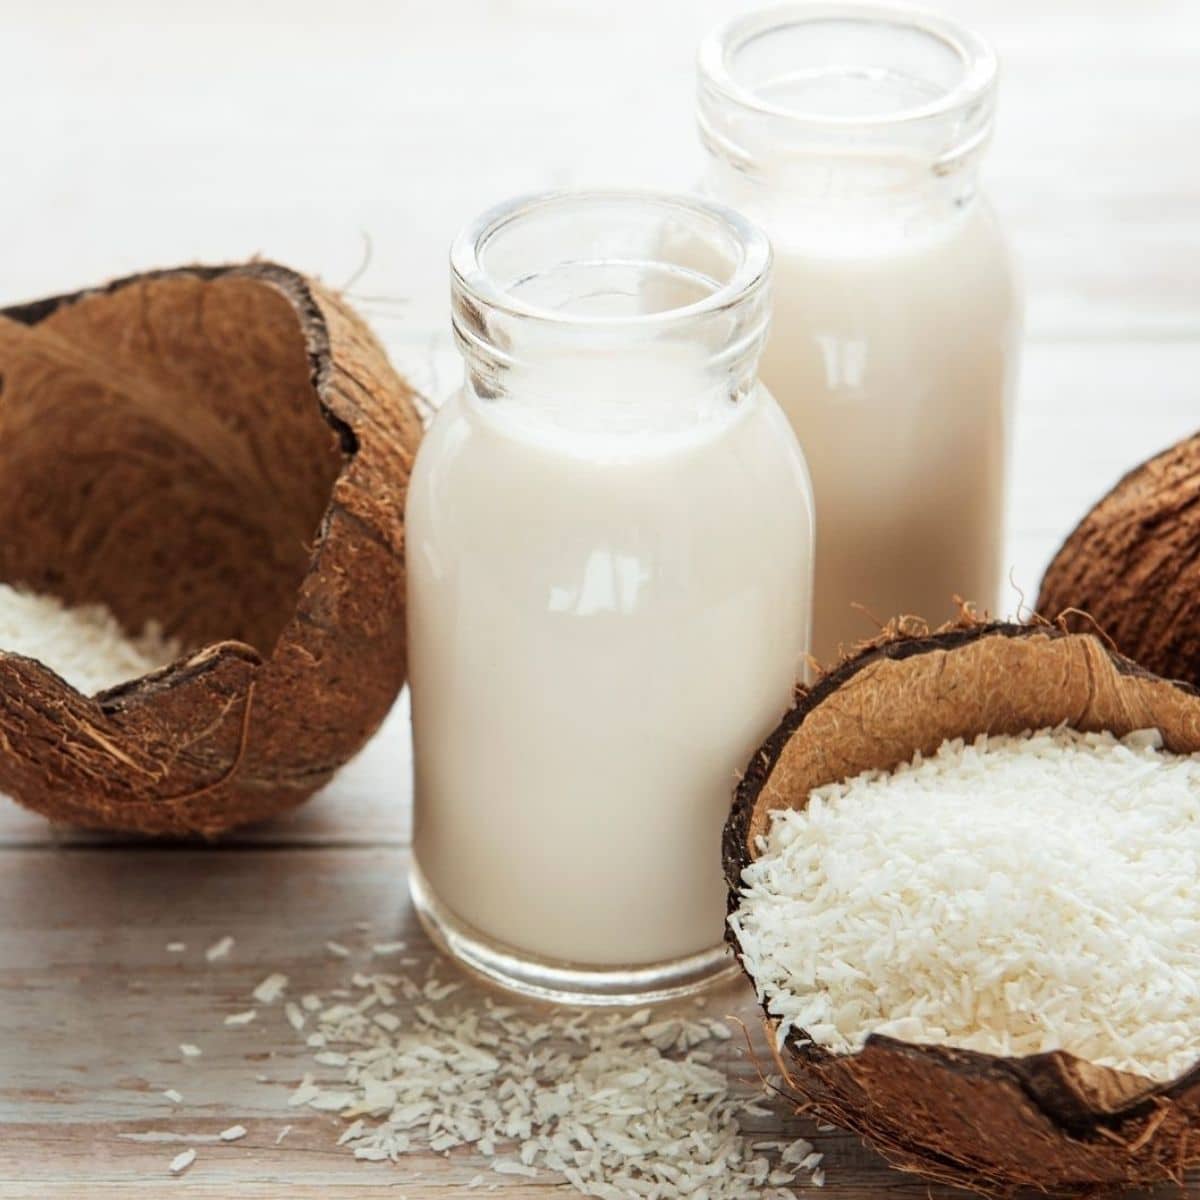 あらゆる料理やベーキングレシピで使用するのに最適なココナッツミルク代替品。